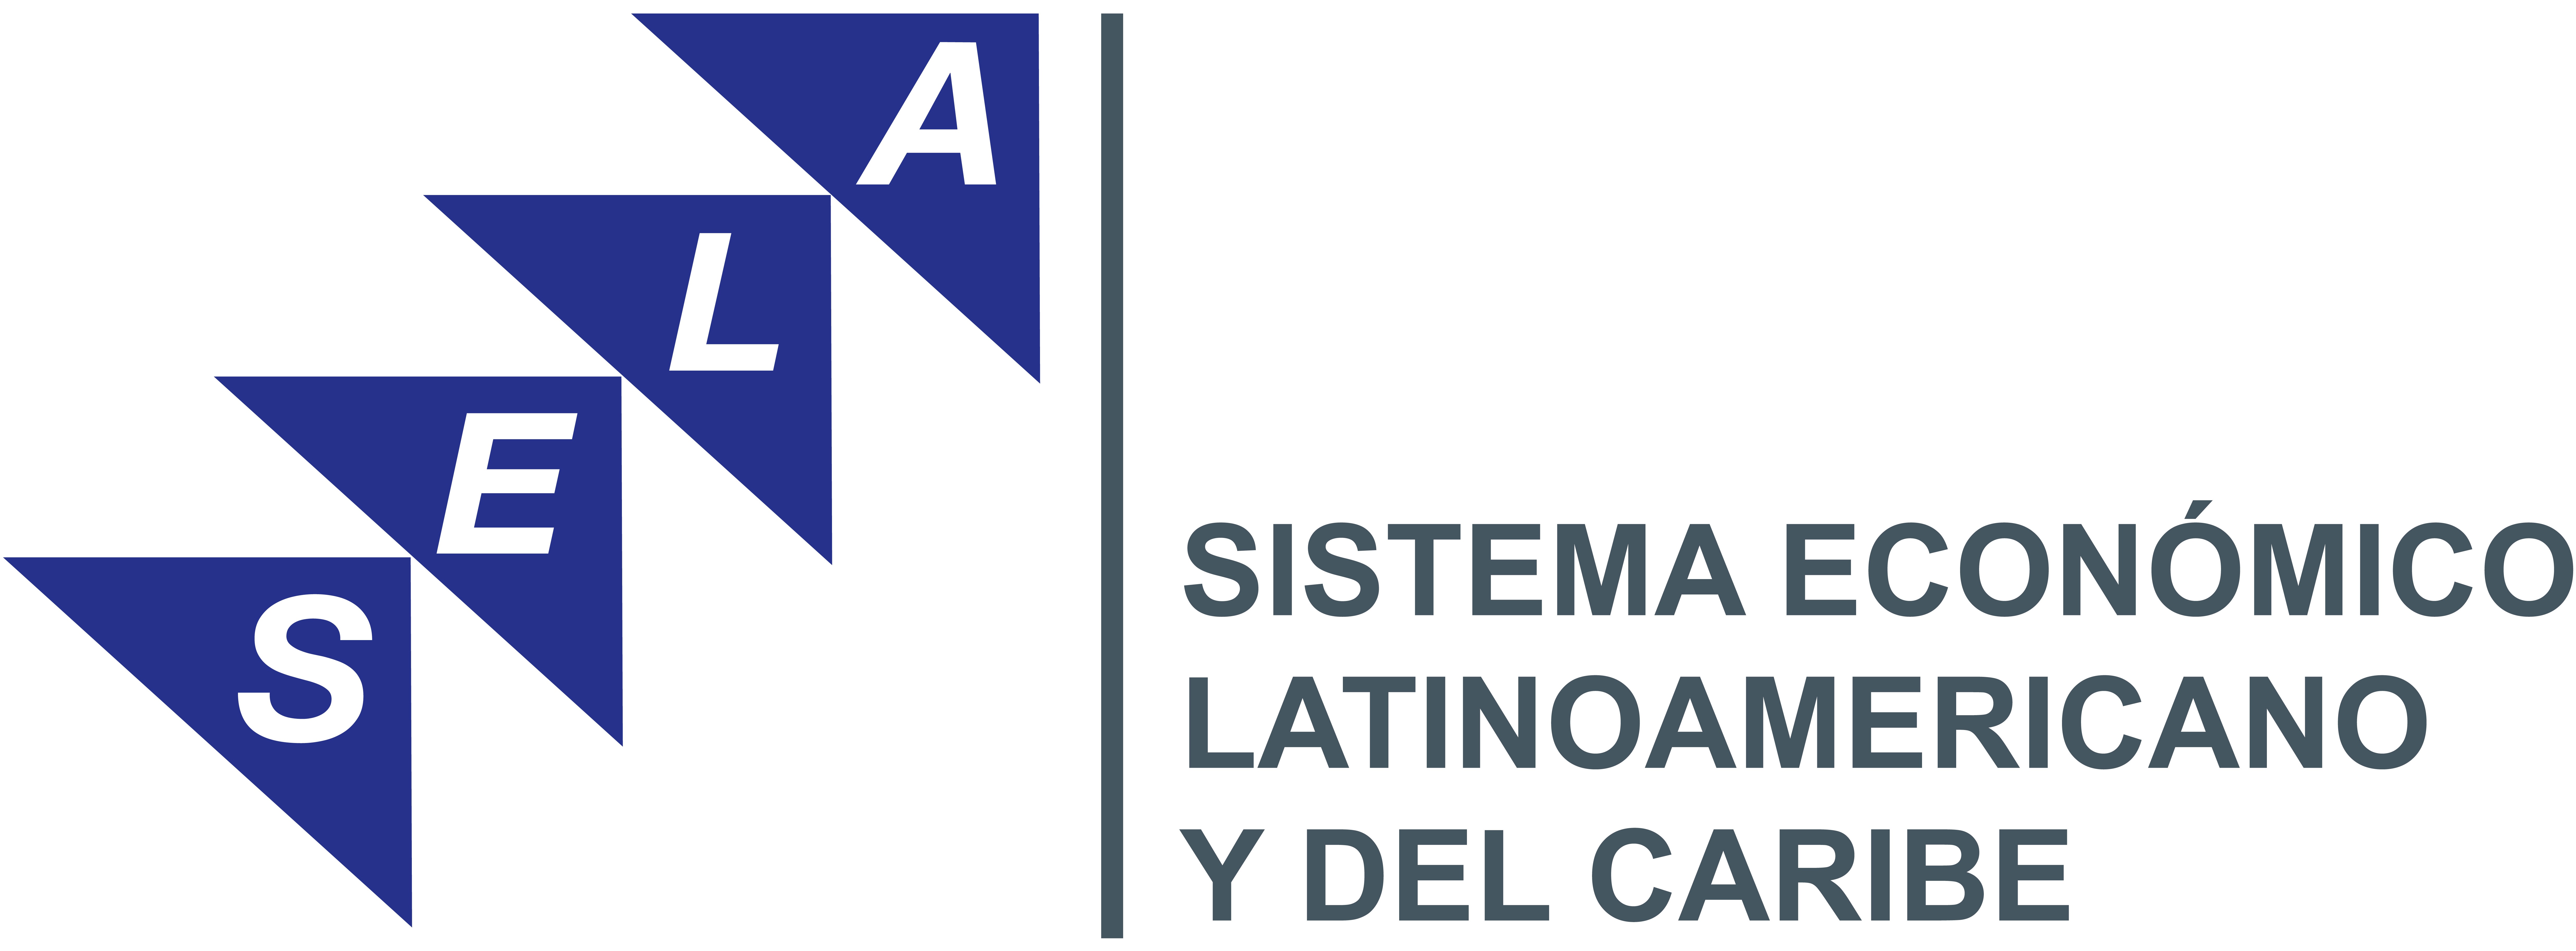 EL SELA conmemora su 42 aniversario cooperando con América Latina y El Caribe